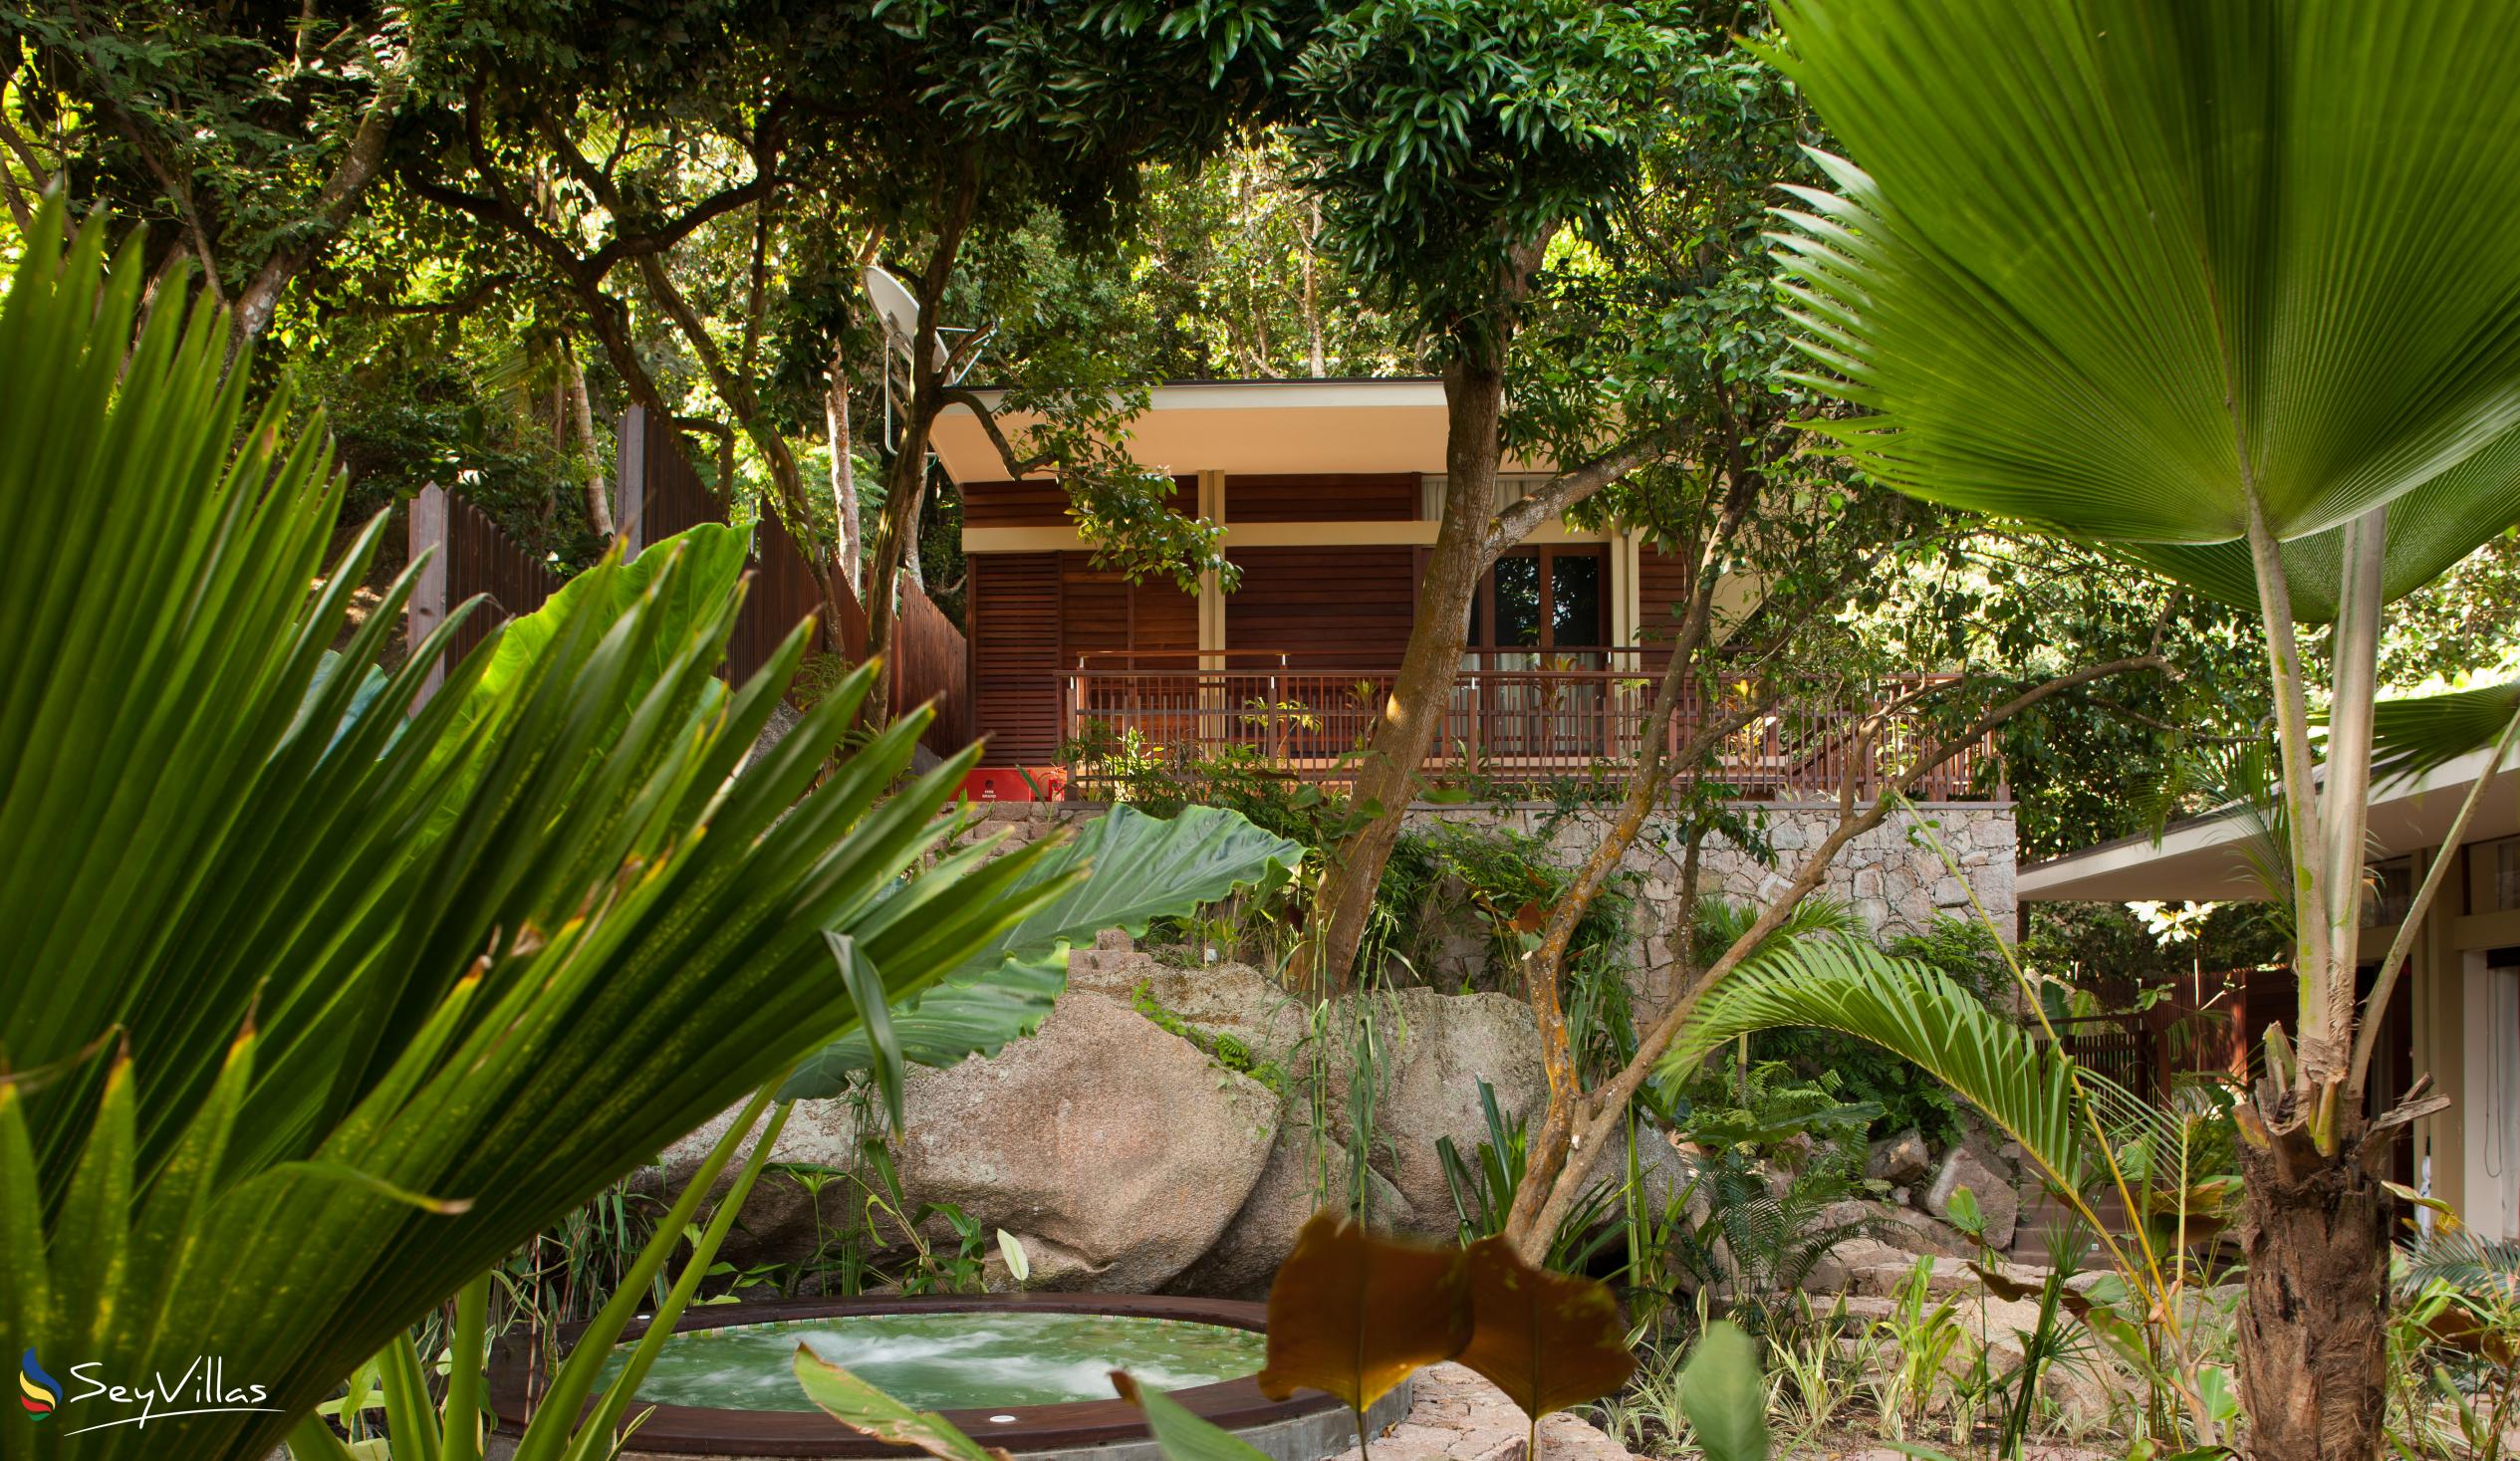 Foto 21: Le Relax Luxury Lodge - Aussenbereich - La Digue (Seychellen)